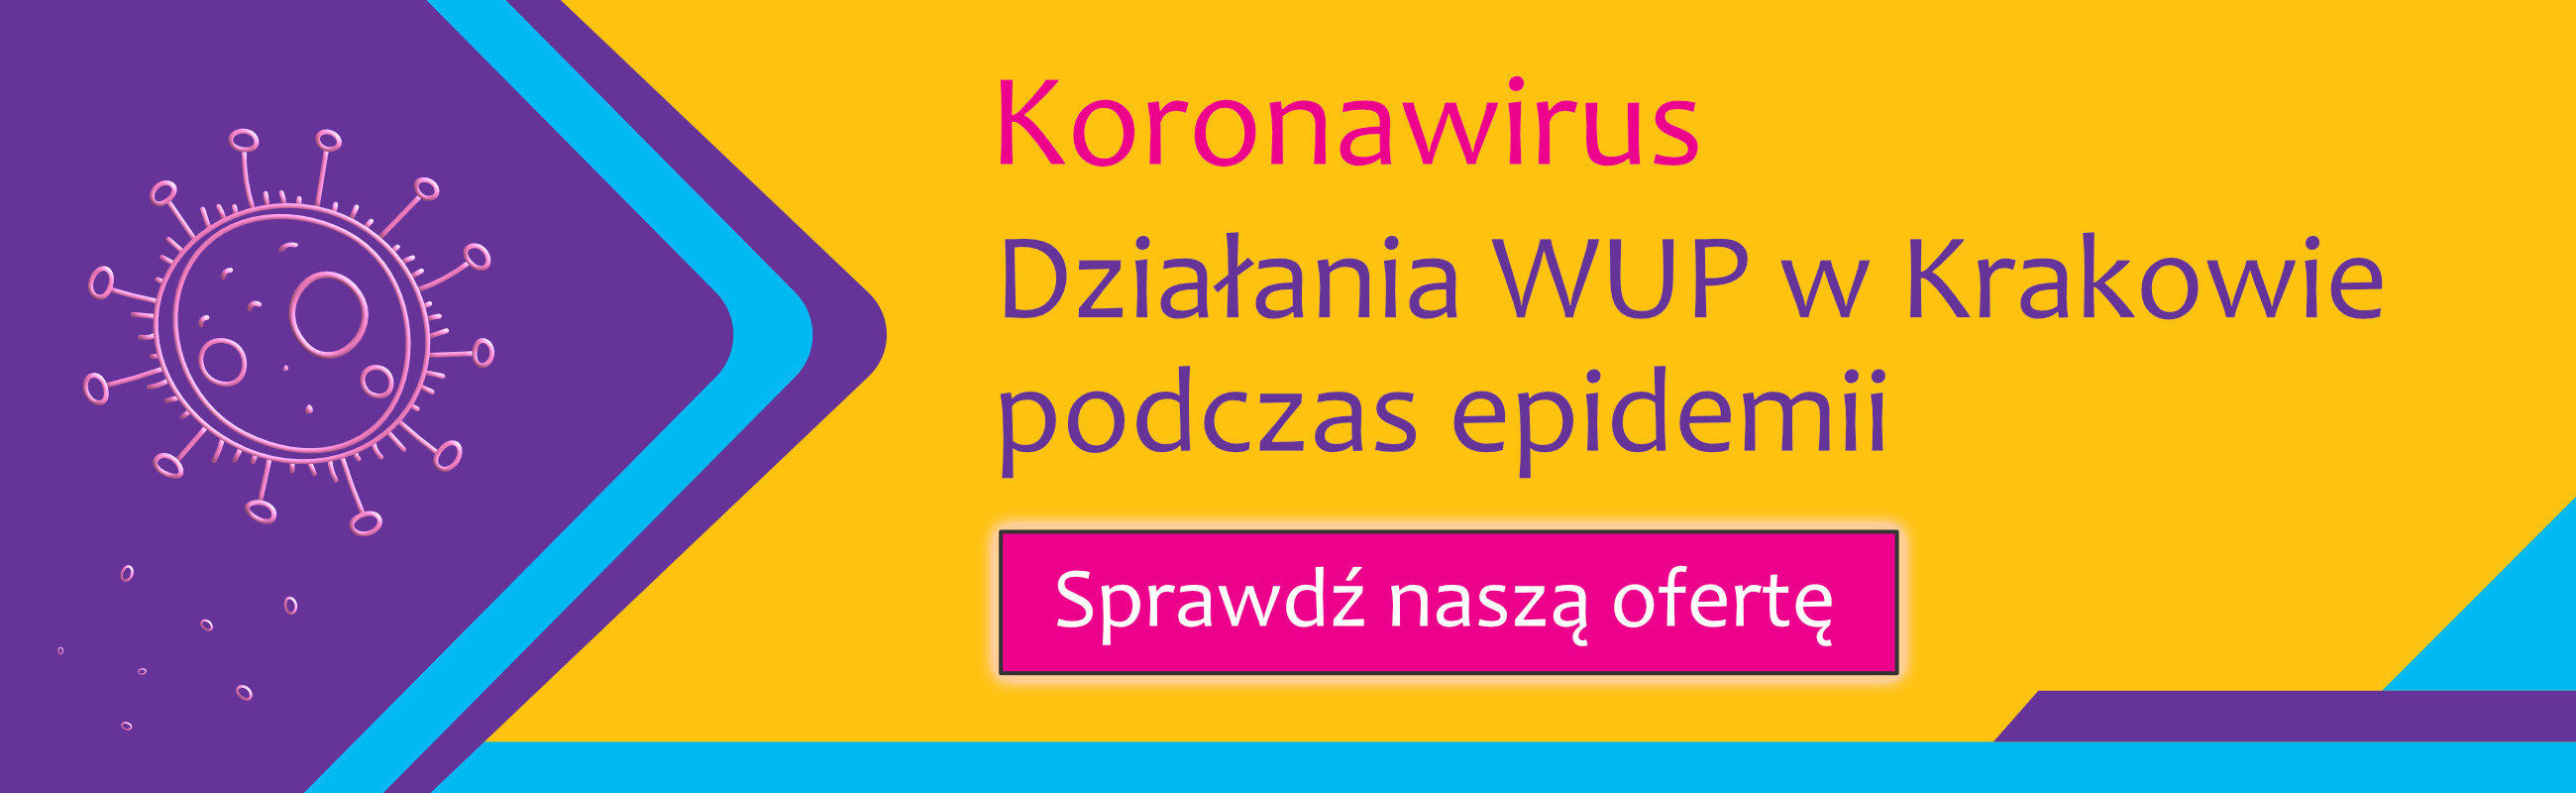 baner Koronawirus, Działanie WUP w Krakowie podczas epidemii, Sprawdź naszą ofertę